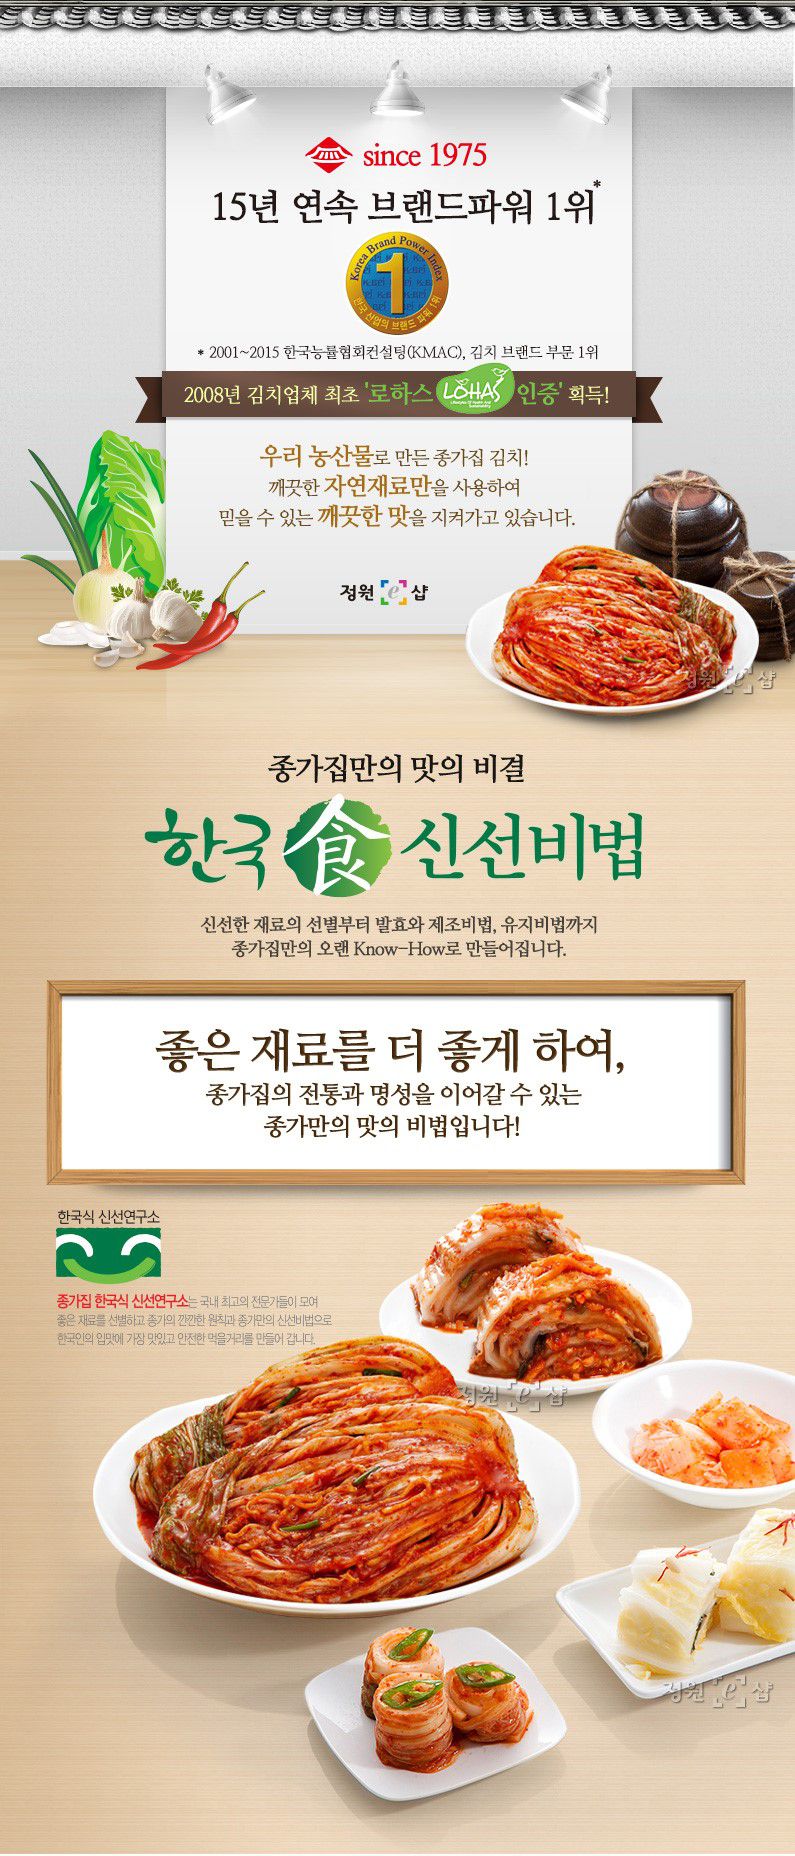 韓國食品-[Chongga] Poggi Kimchi 5kg